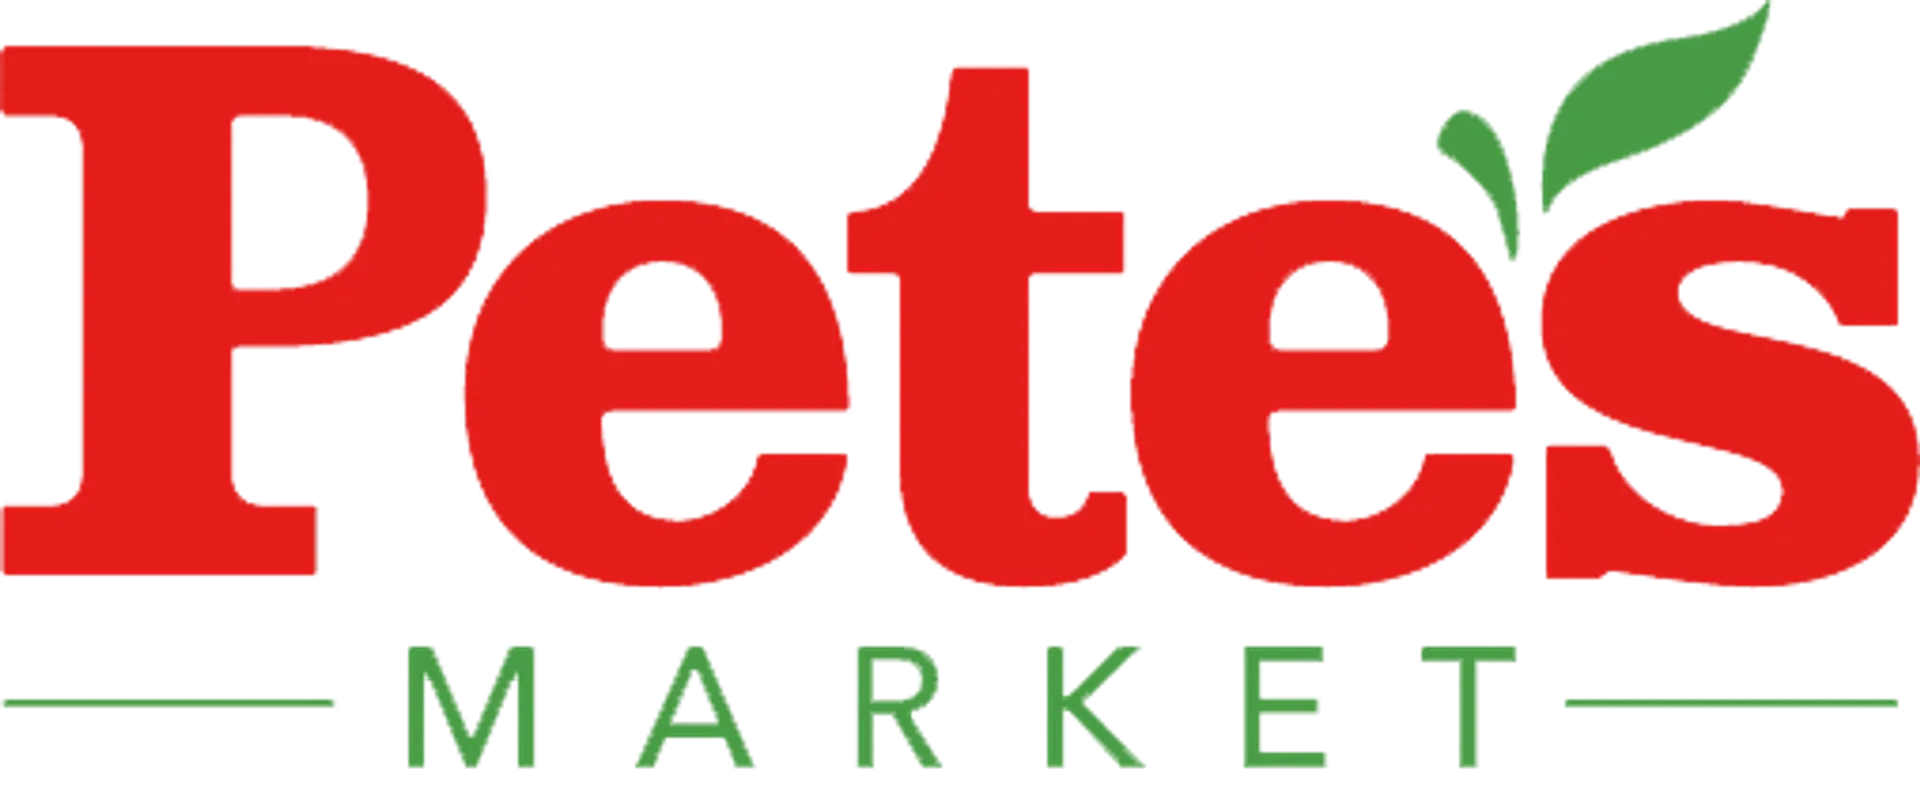 PETE'S FRESH MARKET logo